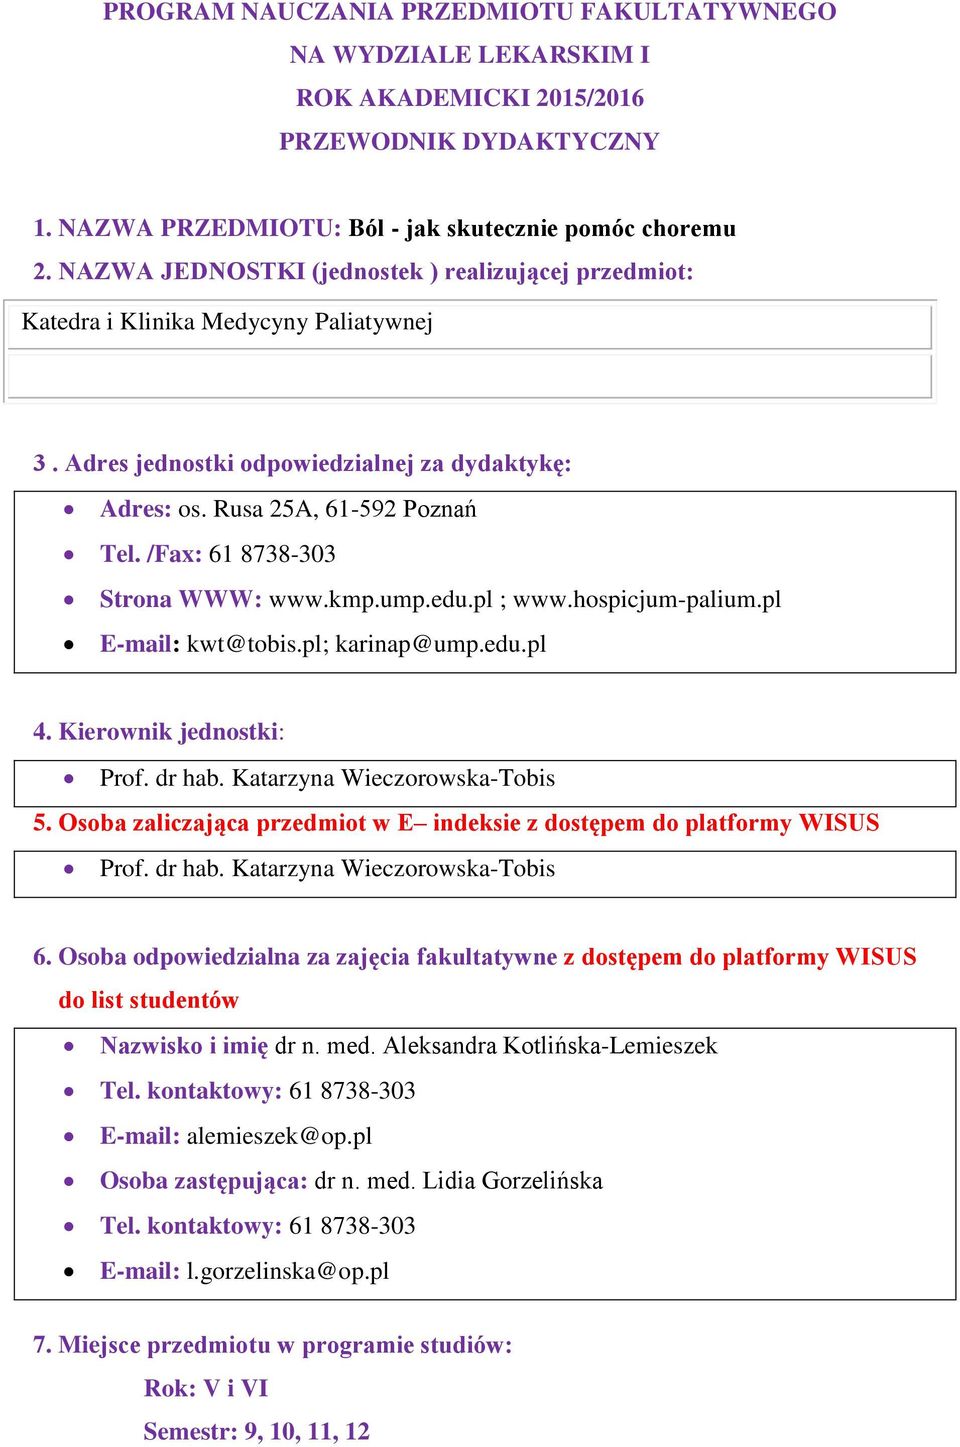 /Fax: 61 8738-303 Strona WWW: www.kmp.ump.edu.pl ; www.hospicjum-palium.pl E-mail: kwt@tobis.pl; karinap@ump.edu.pl 4. Kierownik jednostki: Prof. dr hab. Katarzyna Wieczorowska-Tobis 5.